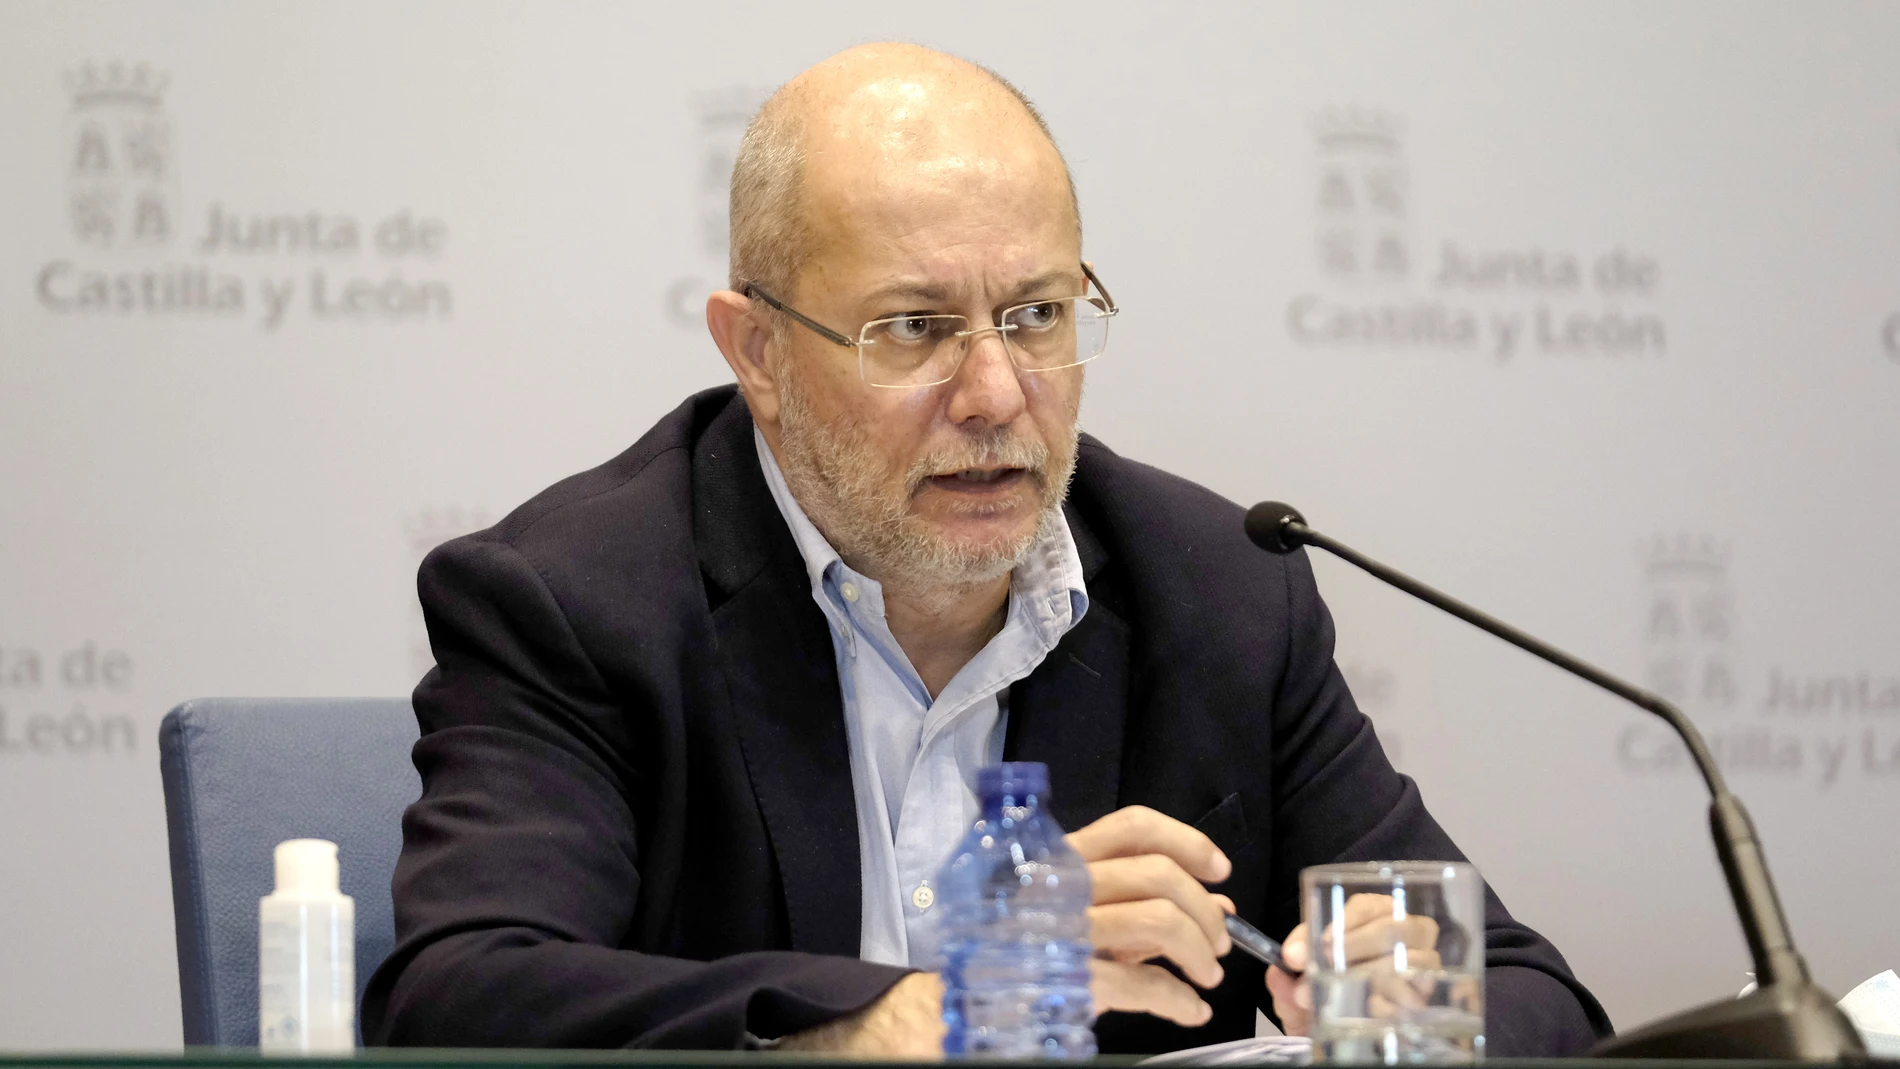 El portavoz de la Junta de Castilla y León, Francisco Igea, carga contra el Gobierno por no informar del traslado de migrantes a Soria durante el estado de alarma